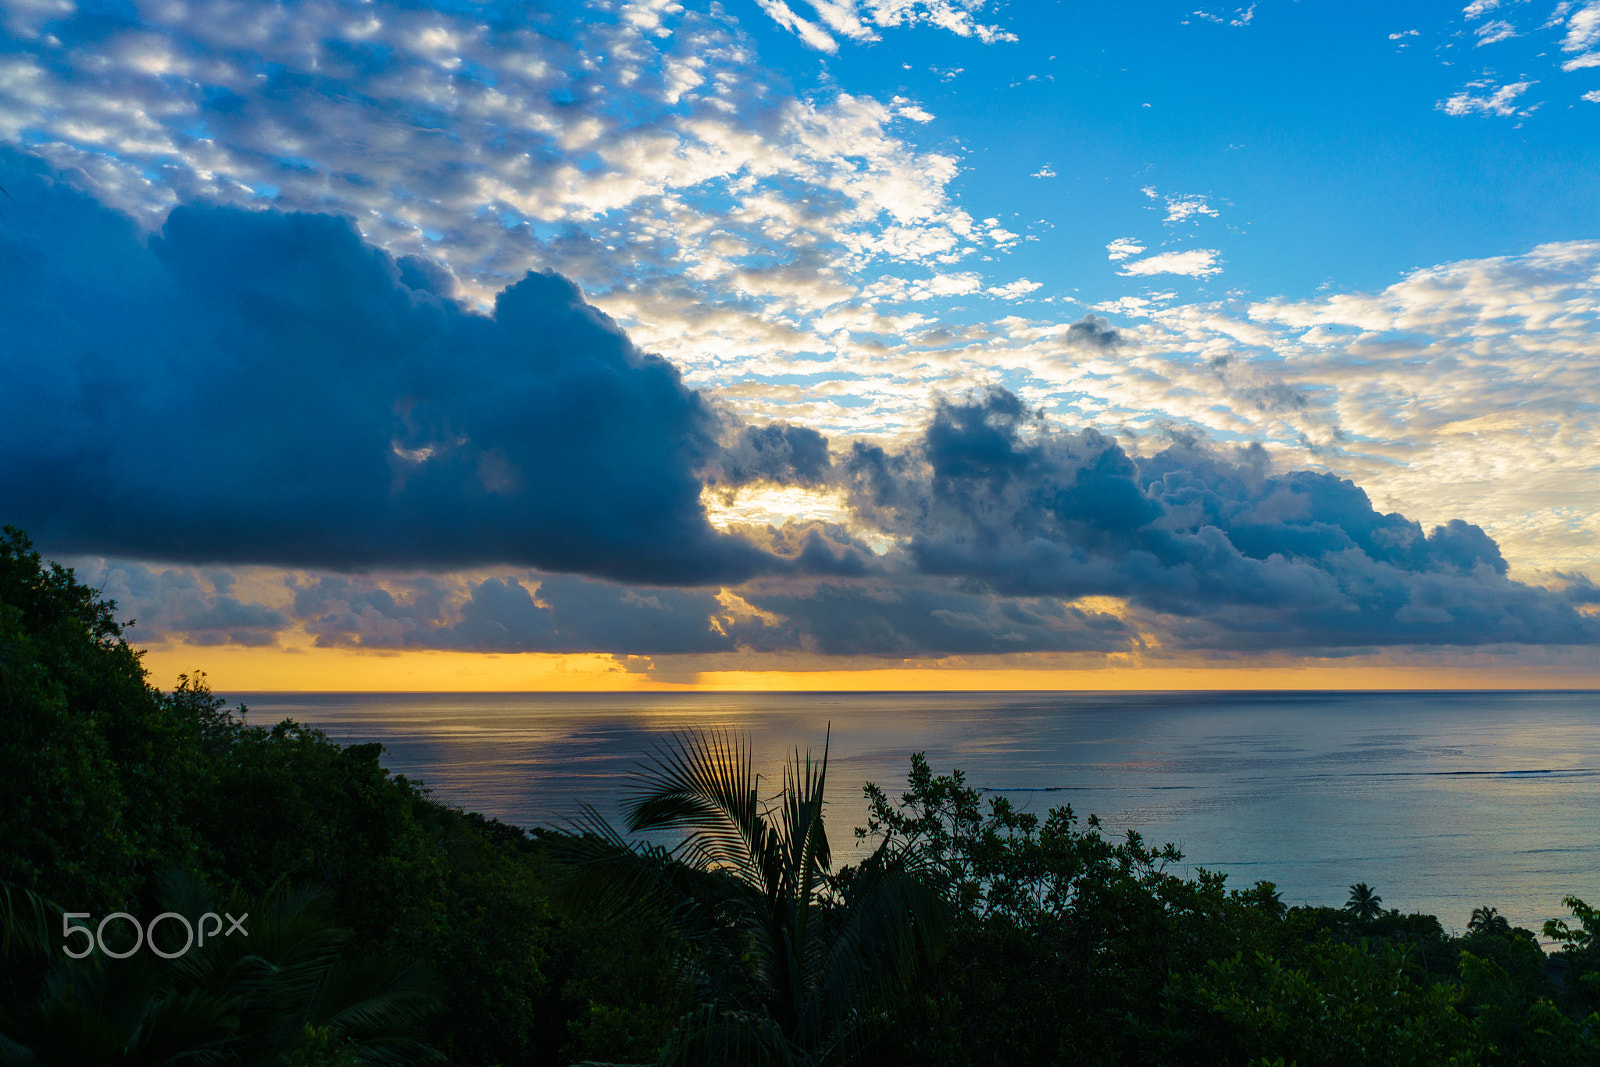 Sony a7R II + Sony FE 28mm F2 sample photo. Cloudy sunrise on mahé island, seychelles photography